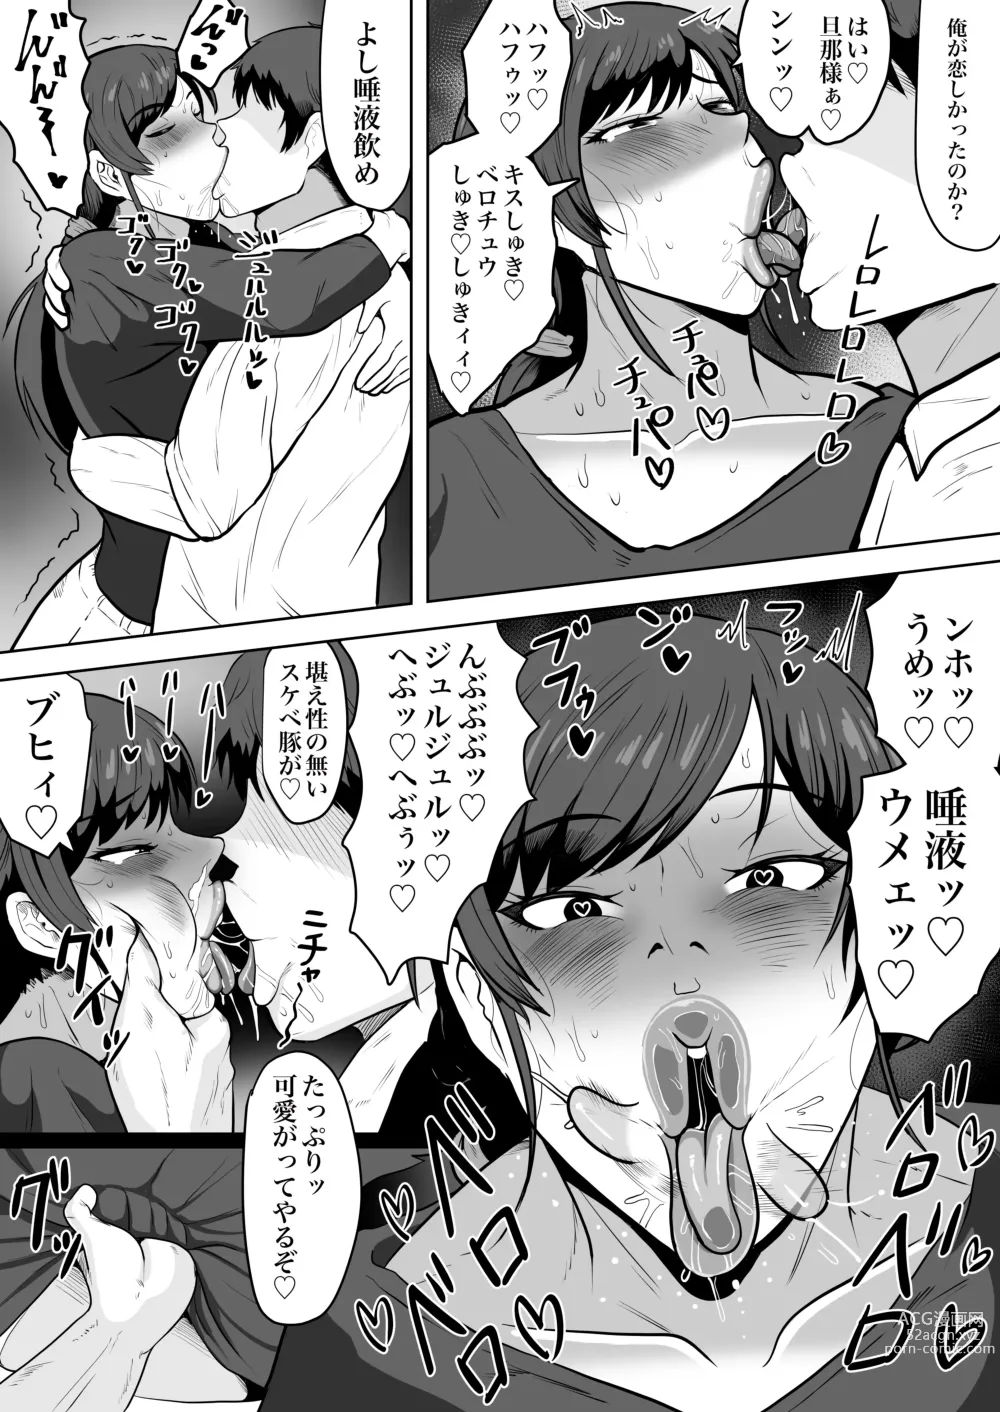 Page 52 of doujinshi Hoken no Sensei Shinobu 37-sai